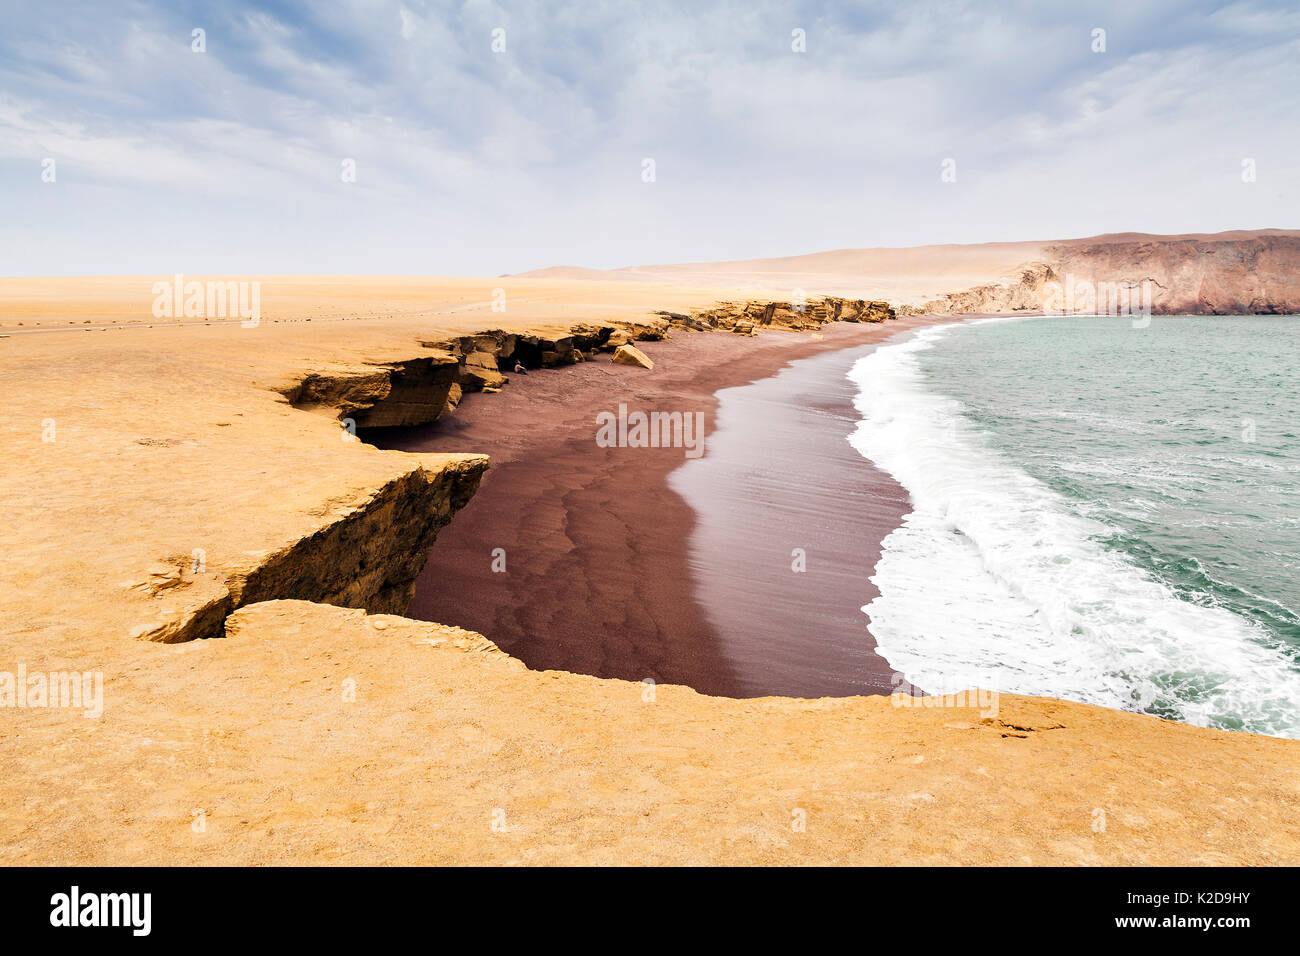 Playa roja, ica, peru hi-res stock photography and images - Alamy